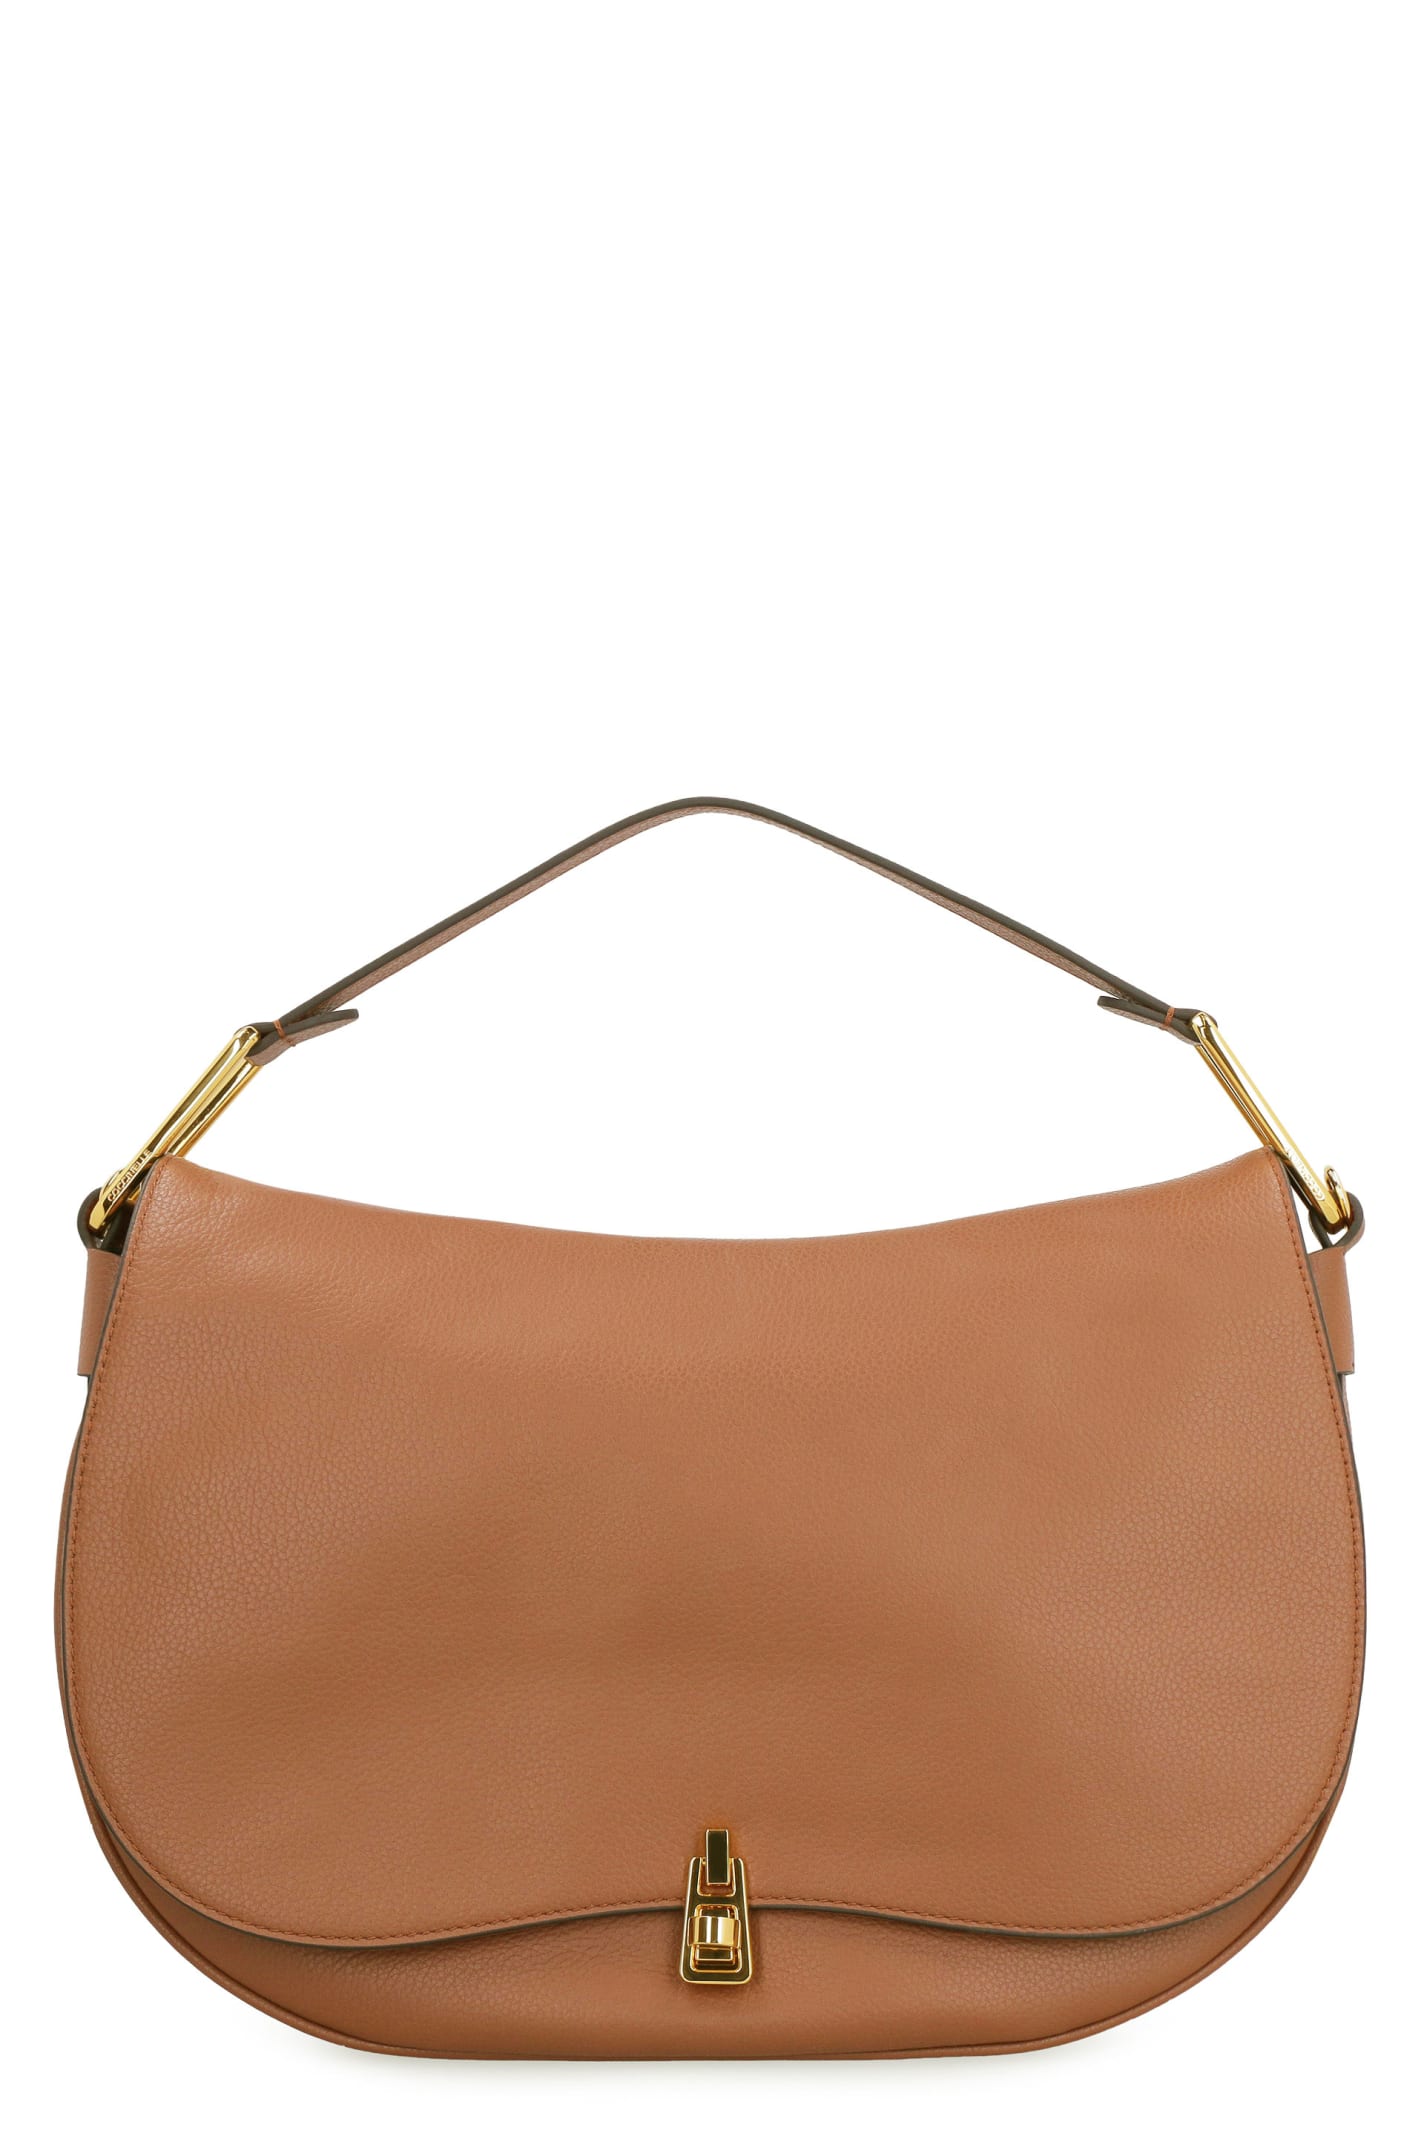 Coccinelle Magie Leather Shoulder Bag